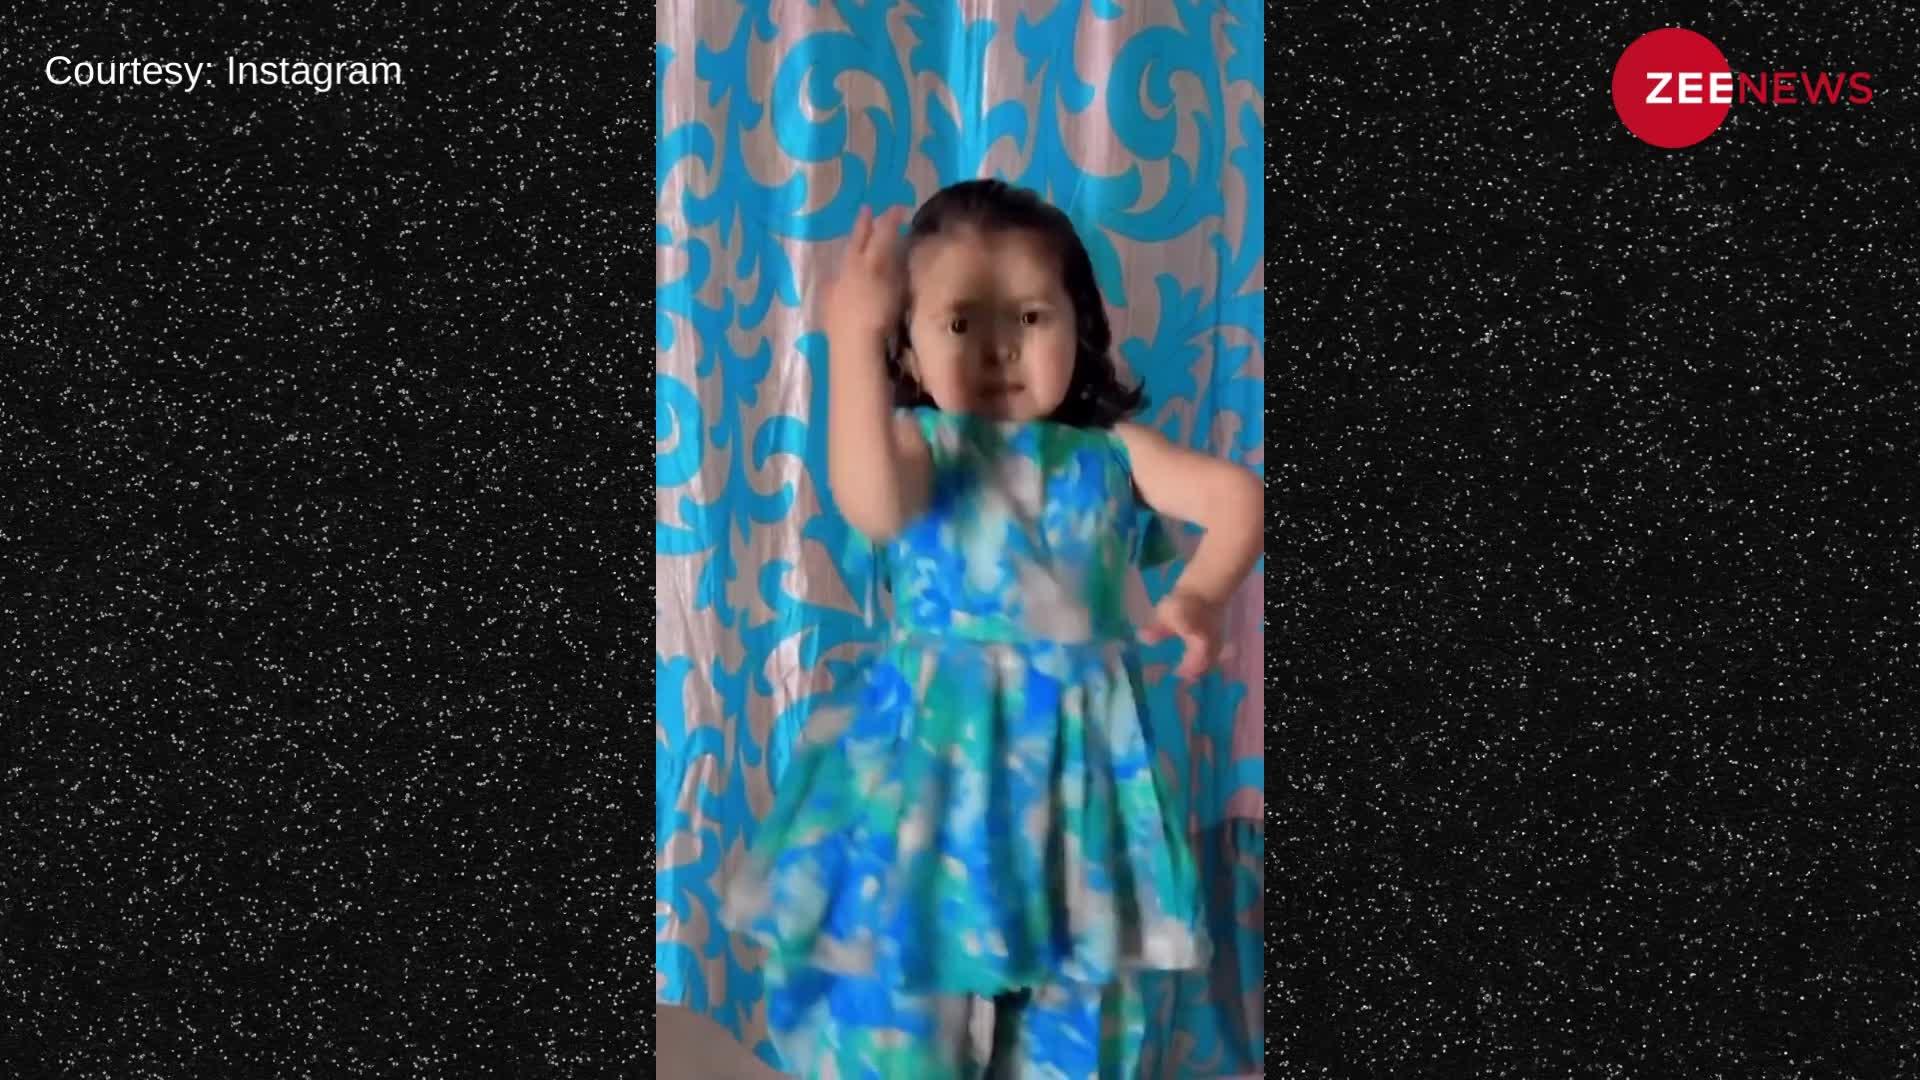 4 साल की बच्ची ने हरियाणवी गाने 'मटको मटका फोड़ेगी' गाने पर काटा बवाल, एक्सप्रेशन देख करेंगे तारीफ